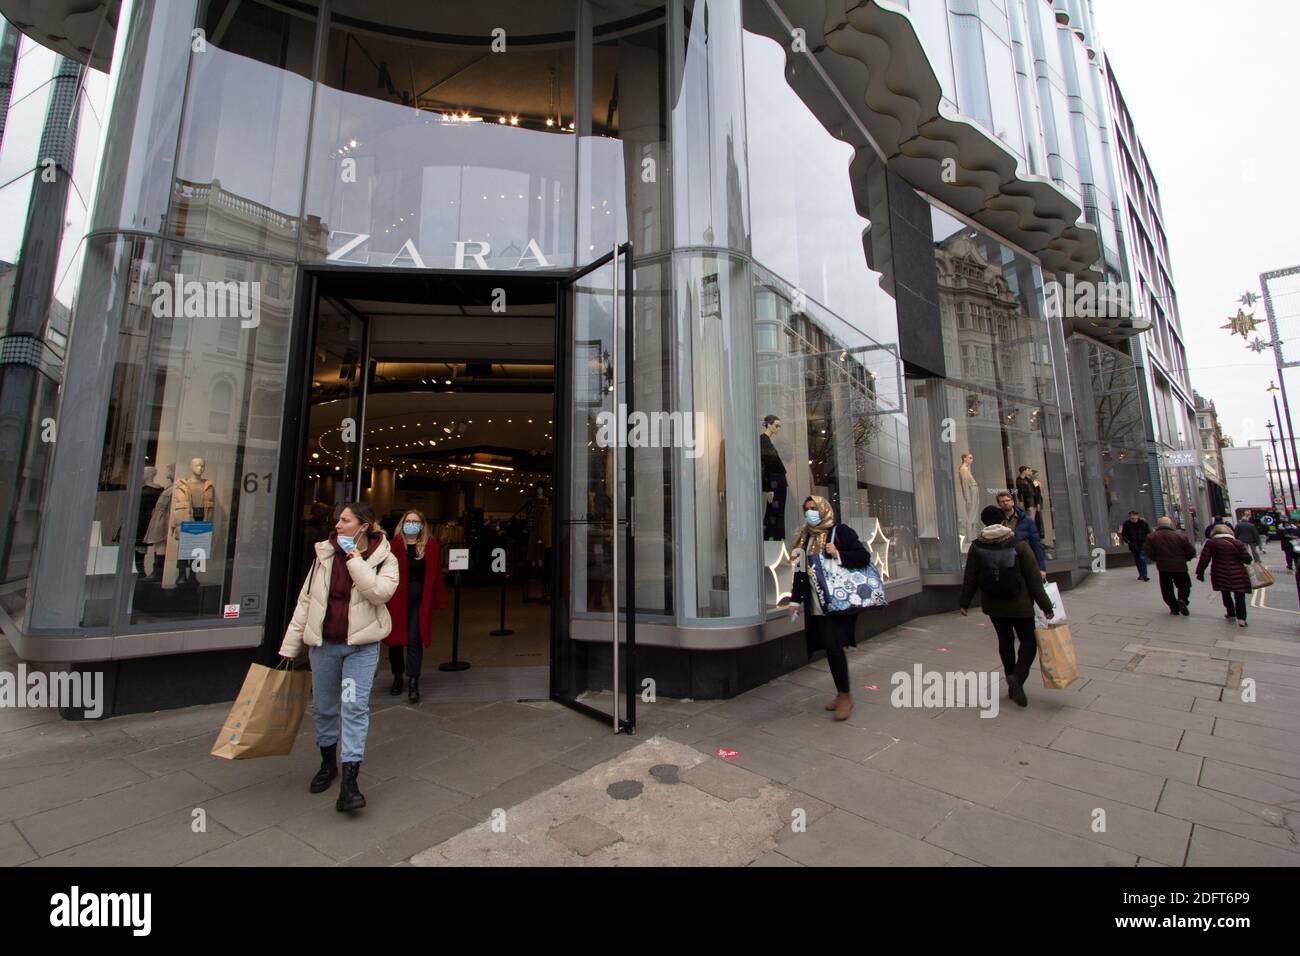 Zara retail fashion outlet Oxford Street London Stock Photo